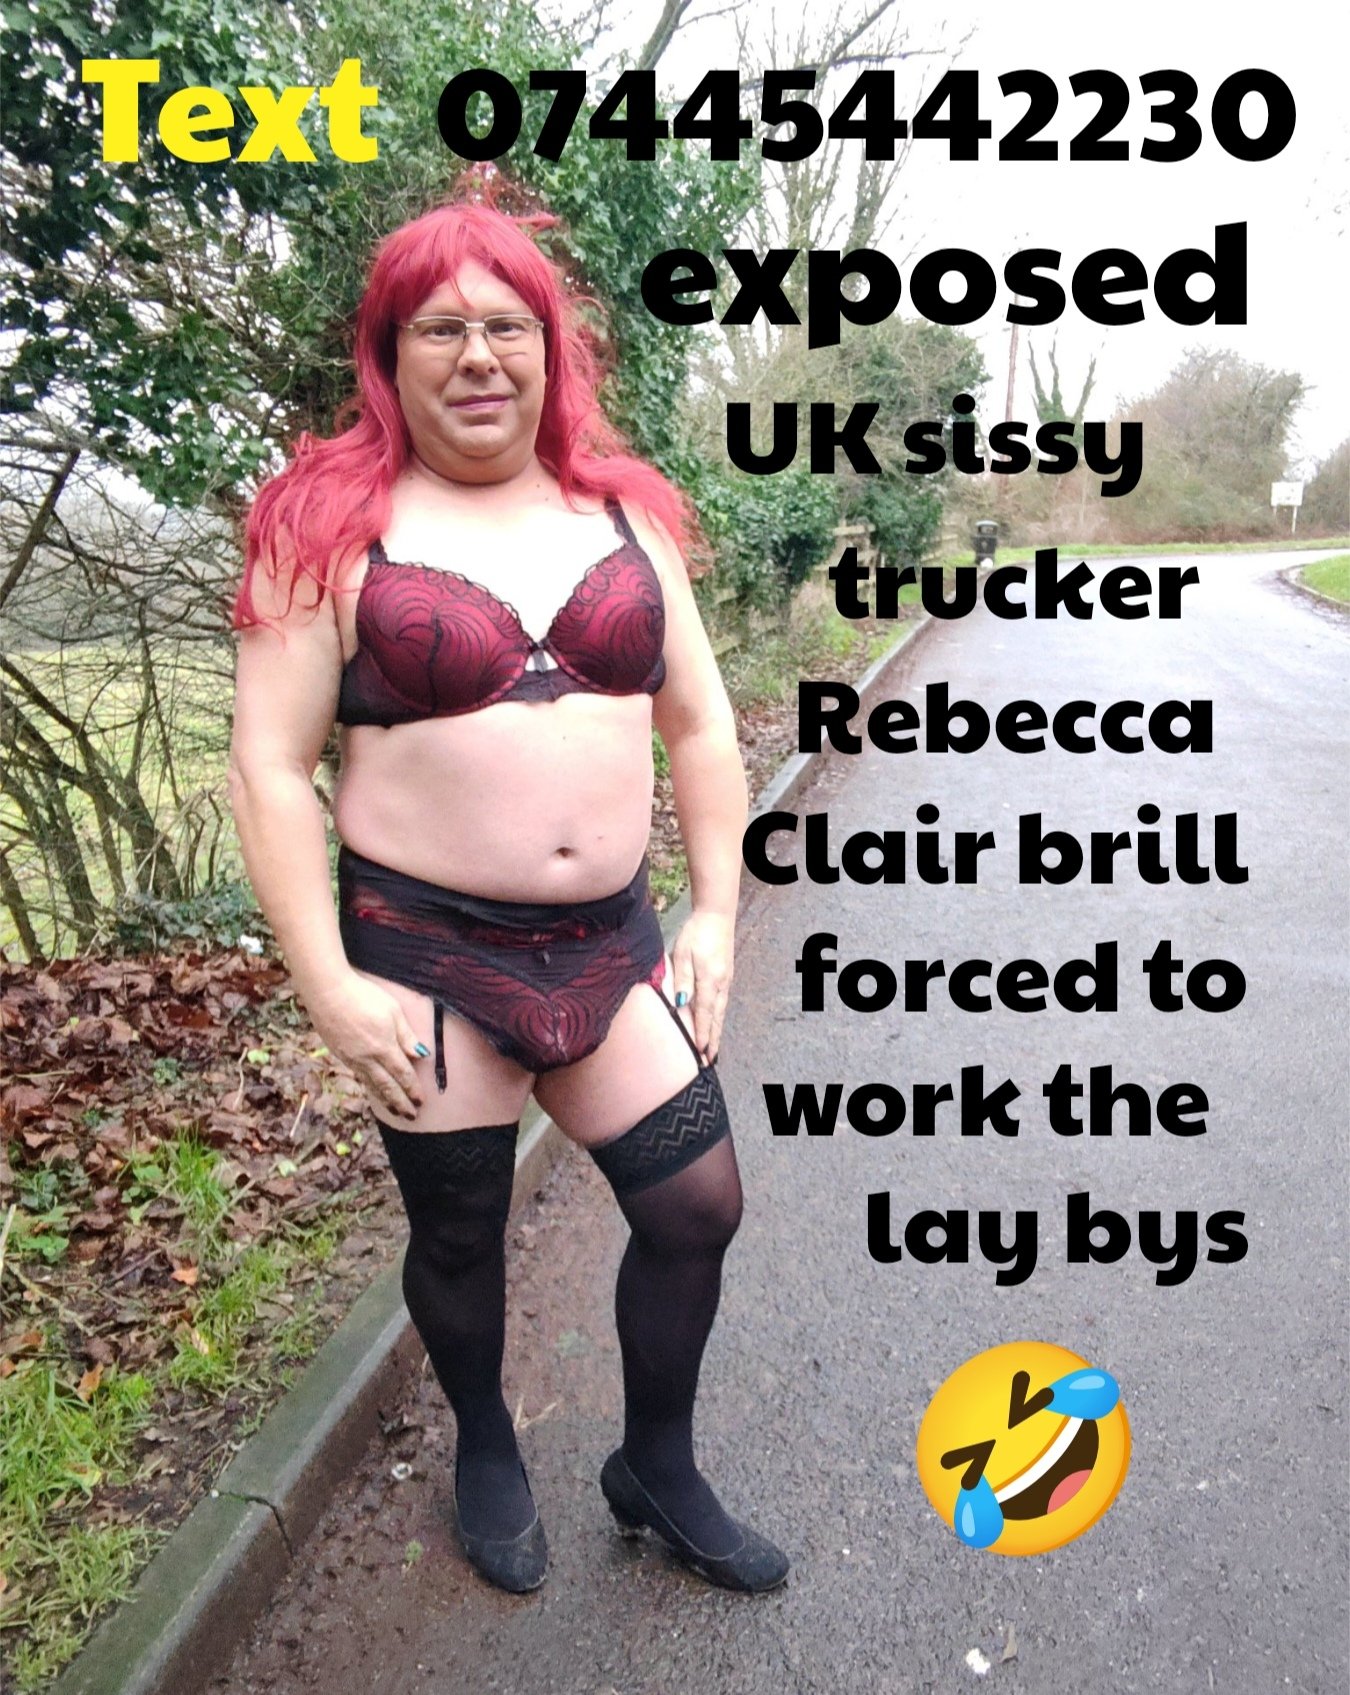 Sissy prostitute Rebecca Clair brill